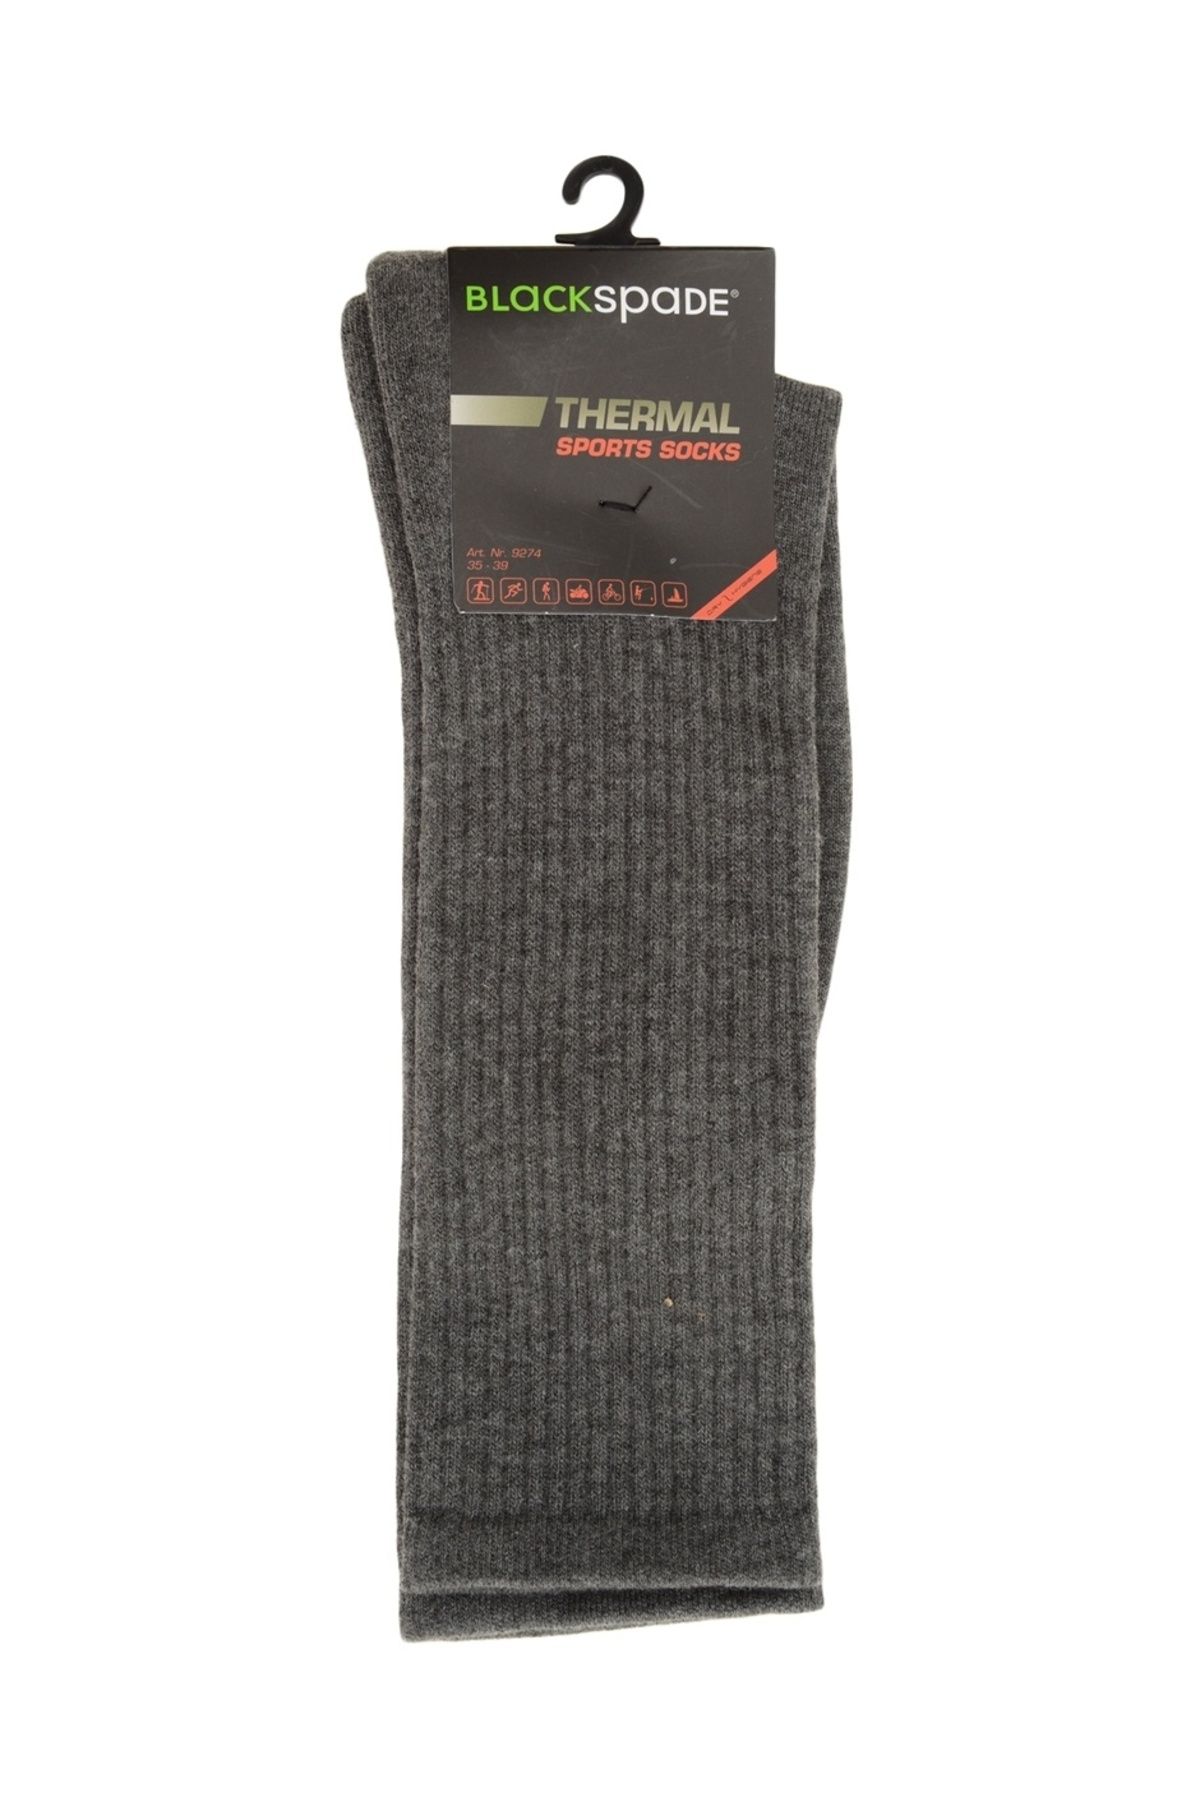 Blackspade Gri Kadın Termal Soket Çorap 9274 Thermal